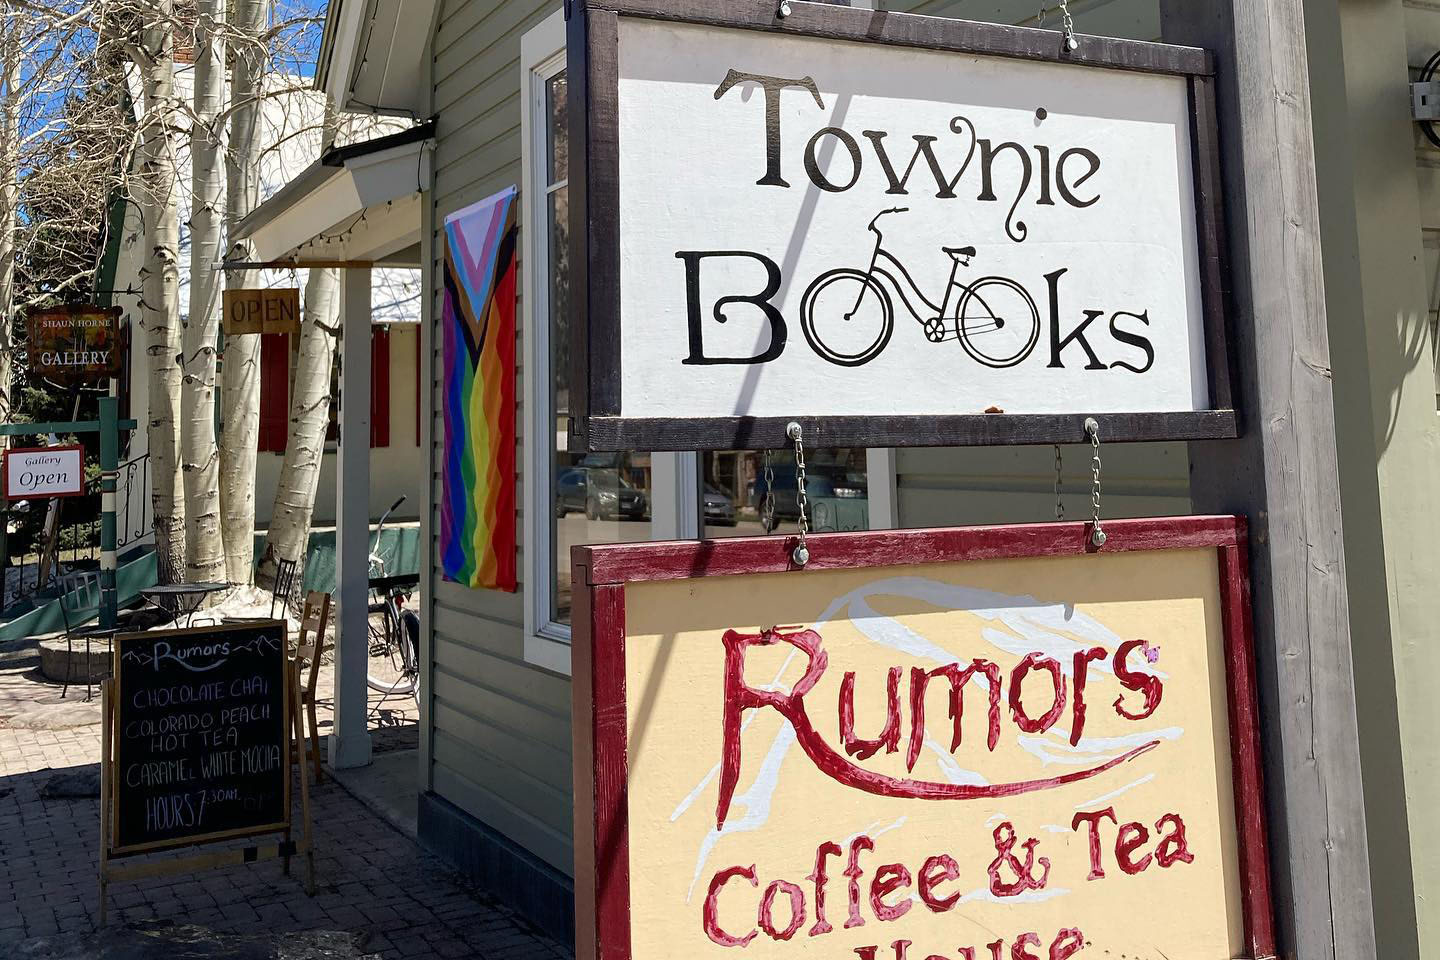 Townie Books / Rumors Coffee & Tea House